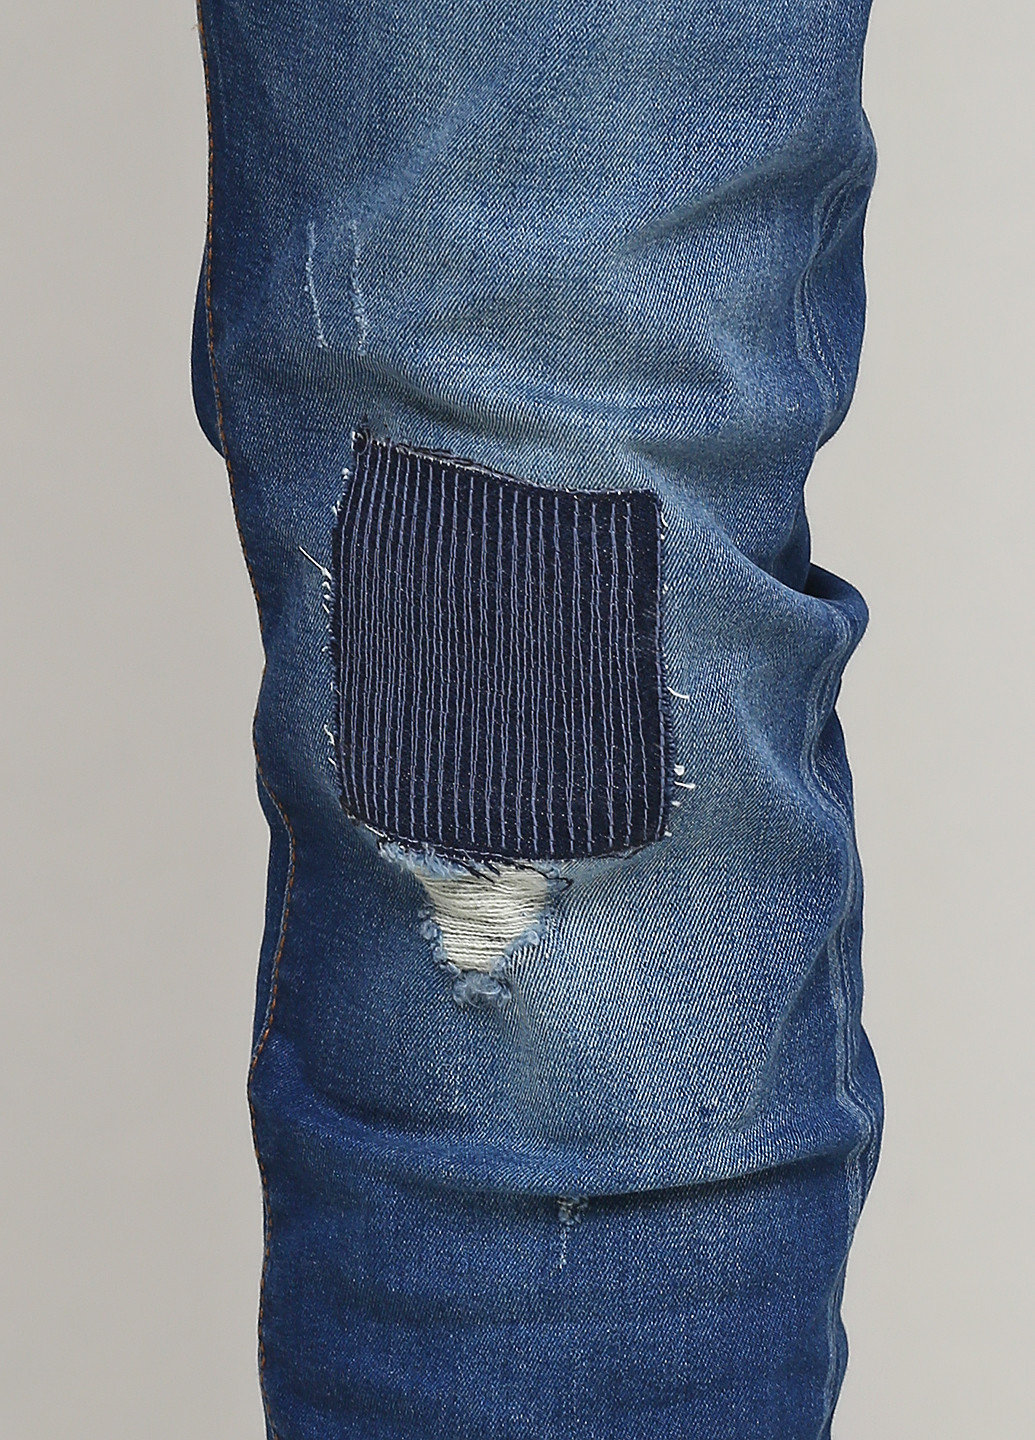 Синие демисезонные прямые джинсы Piazza Italia